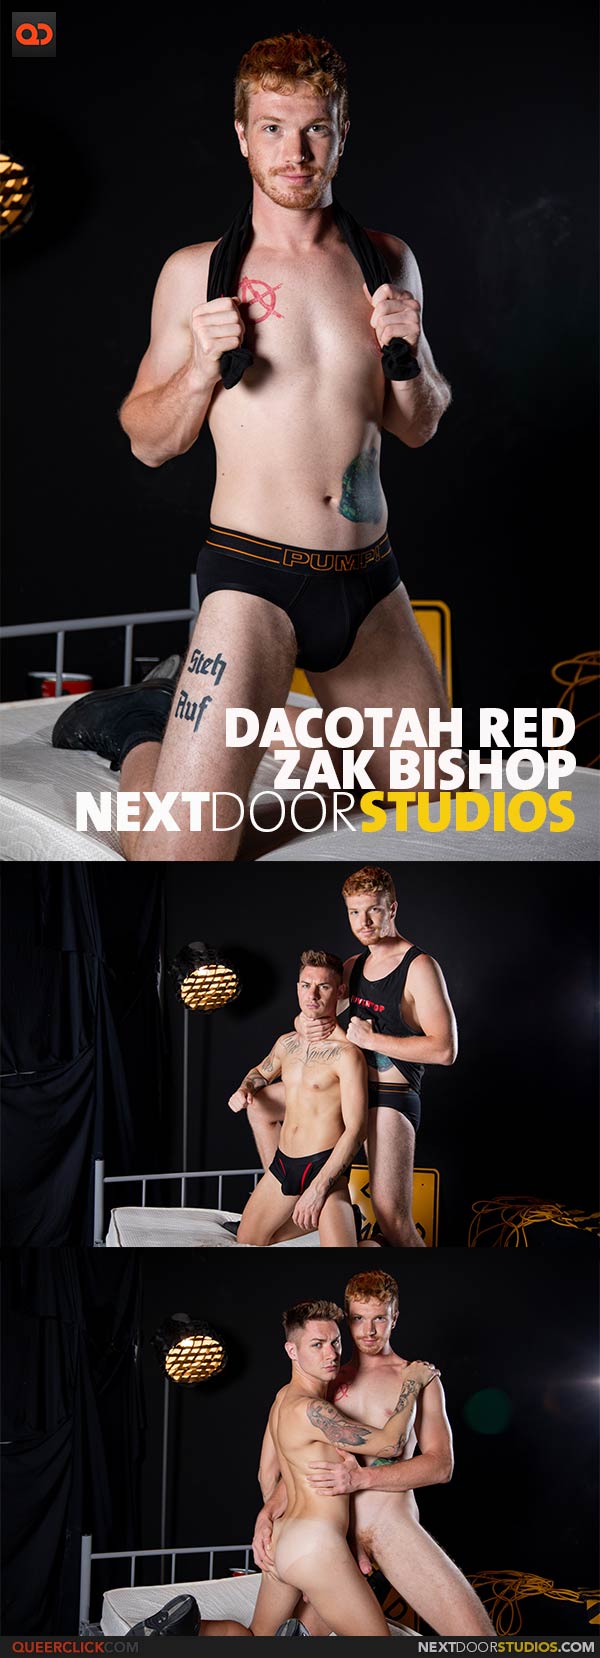 NextDoorStudios: Zak Bishop and Dacotah Red